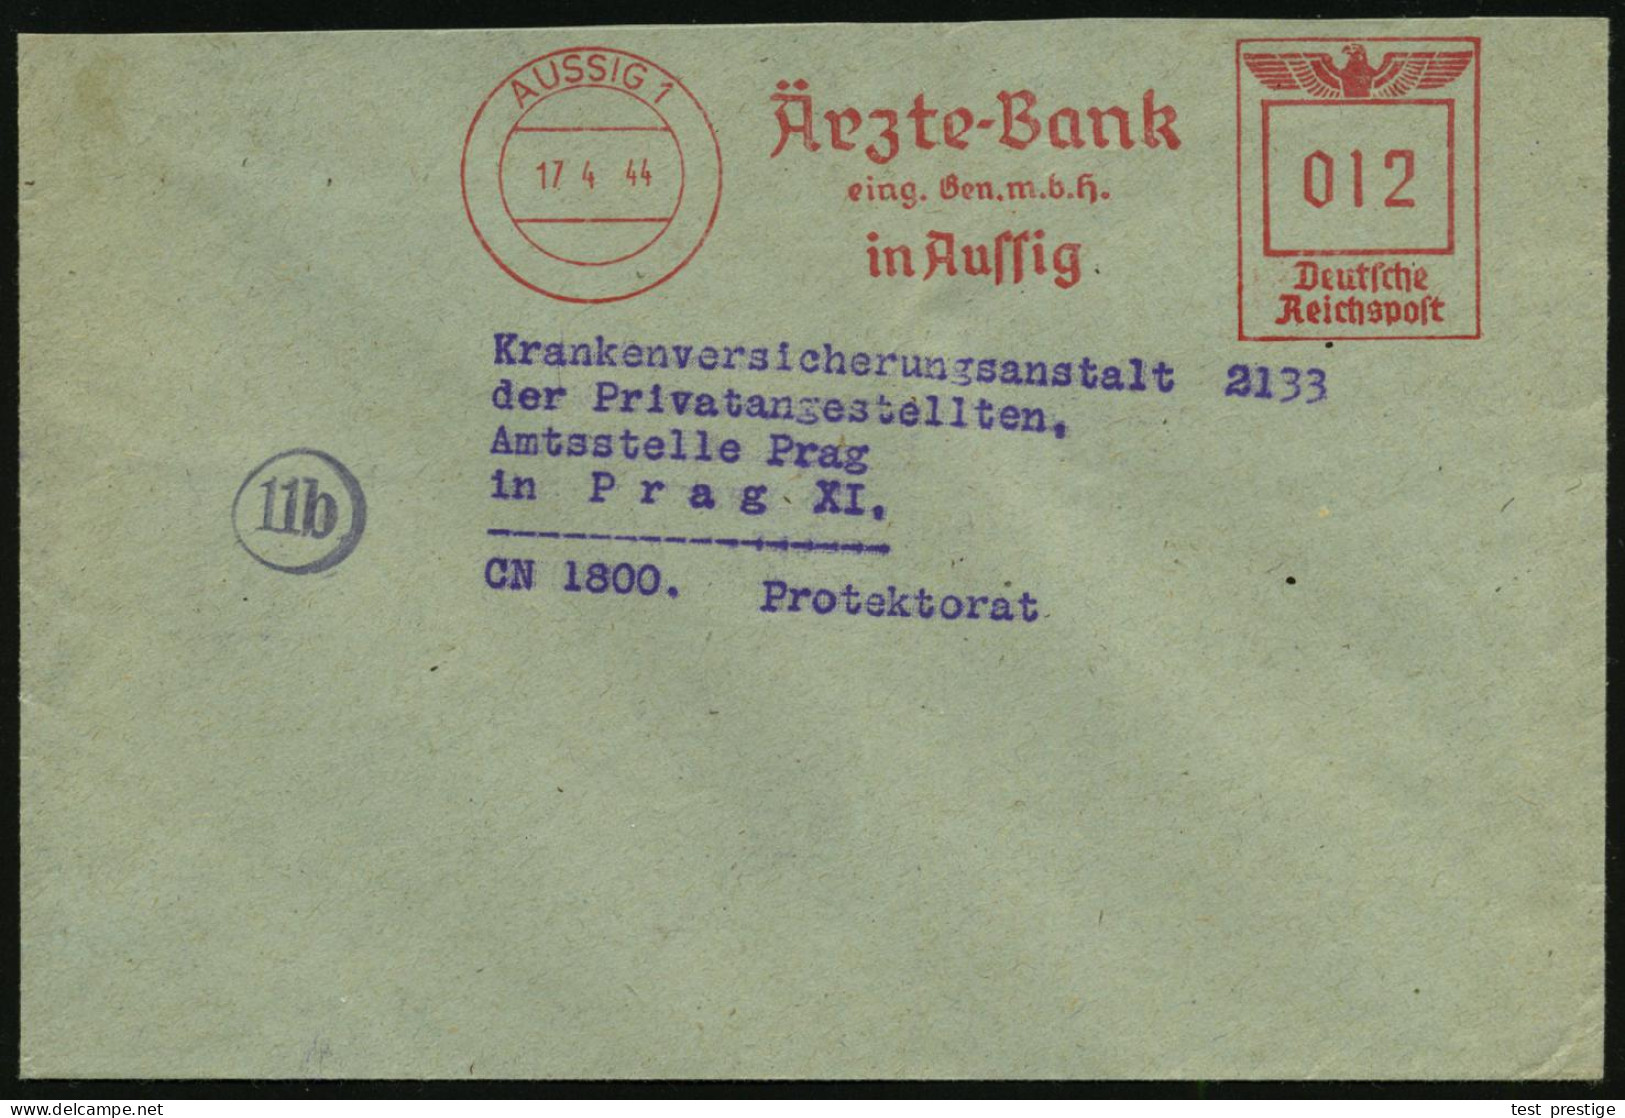 AUSSIG 1/ Ärzte-Bank/ Eing.Gen.m.b.H. 1944 (17.4.) AFS 012 Pf. Inl.-Tarif N. Prag (Böhmen & Mähren = Besetzte CSR), Klar - Medizin